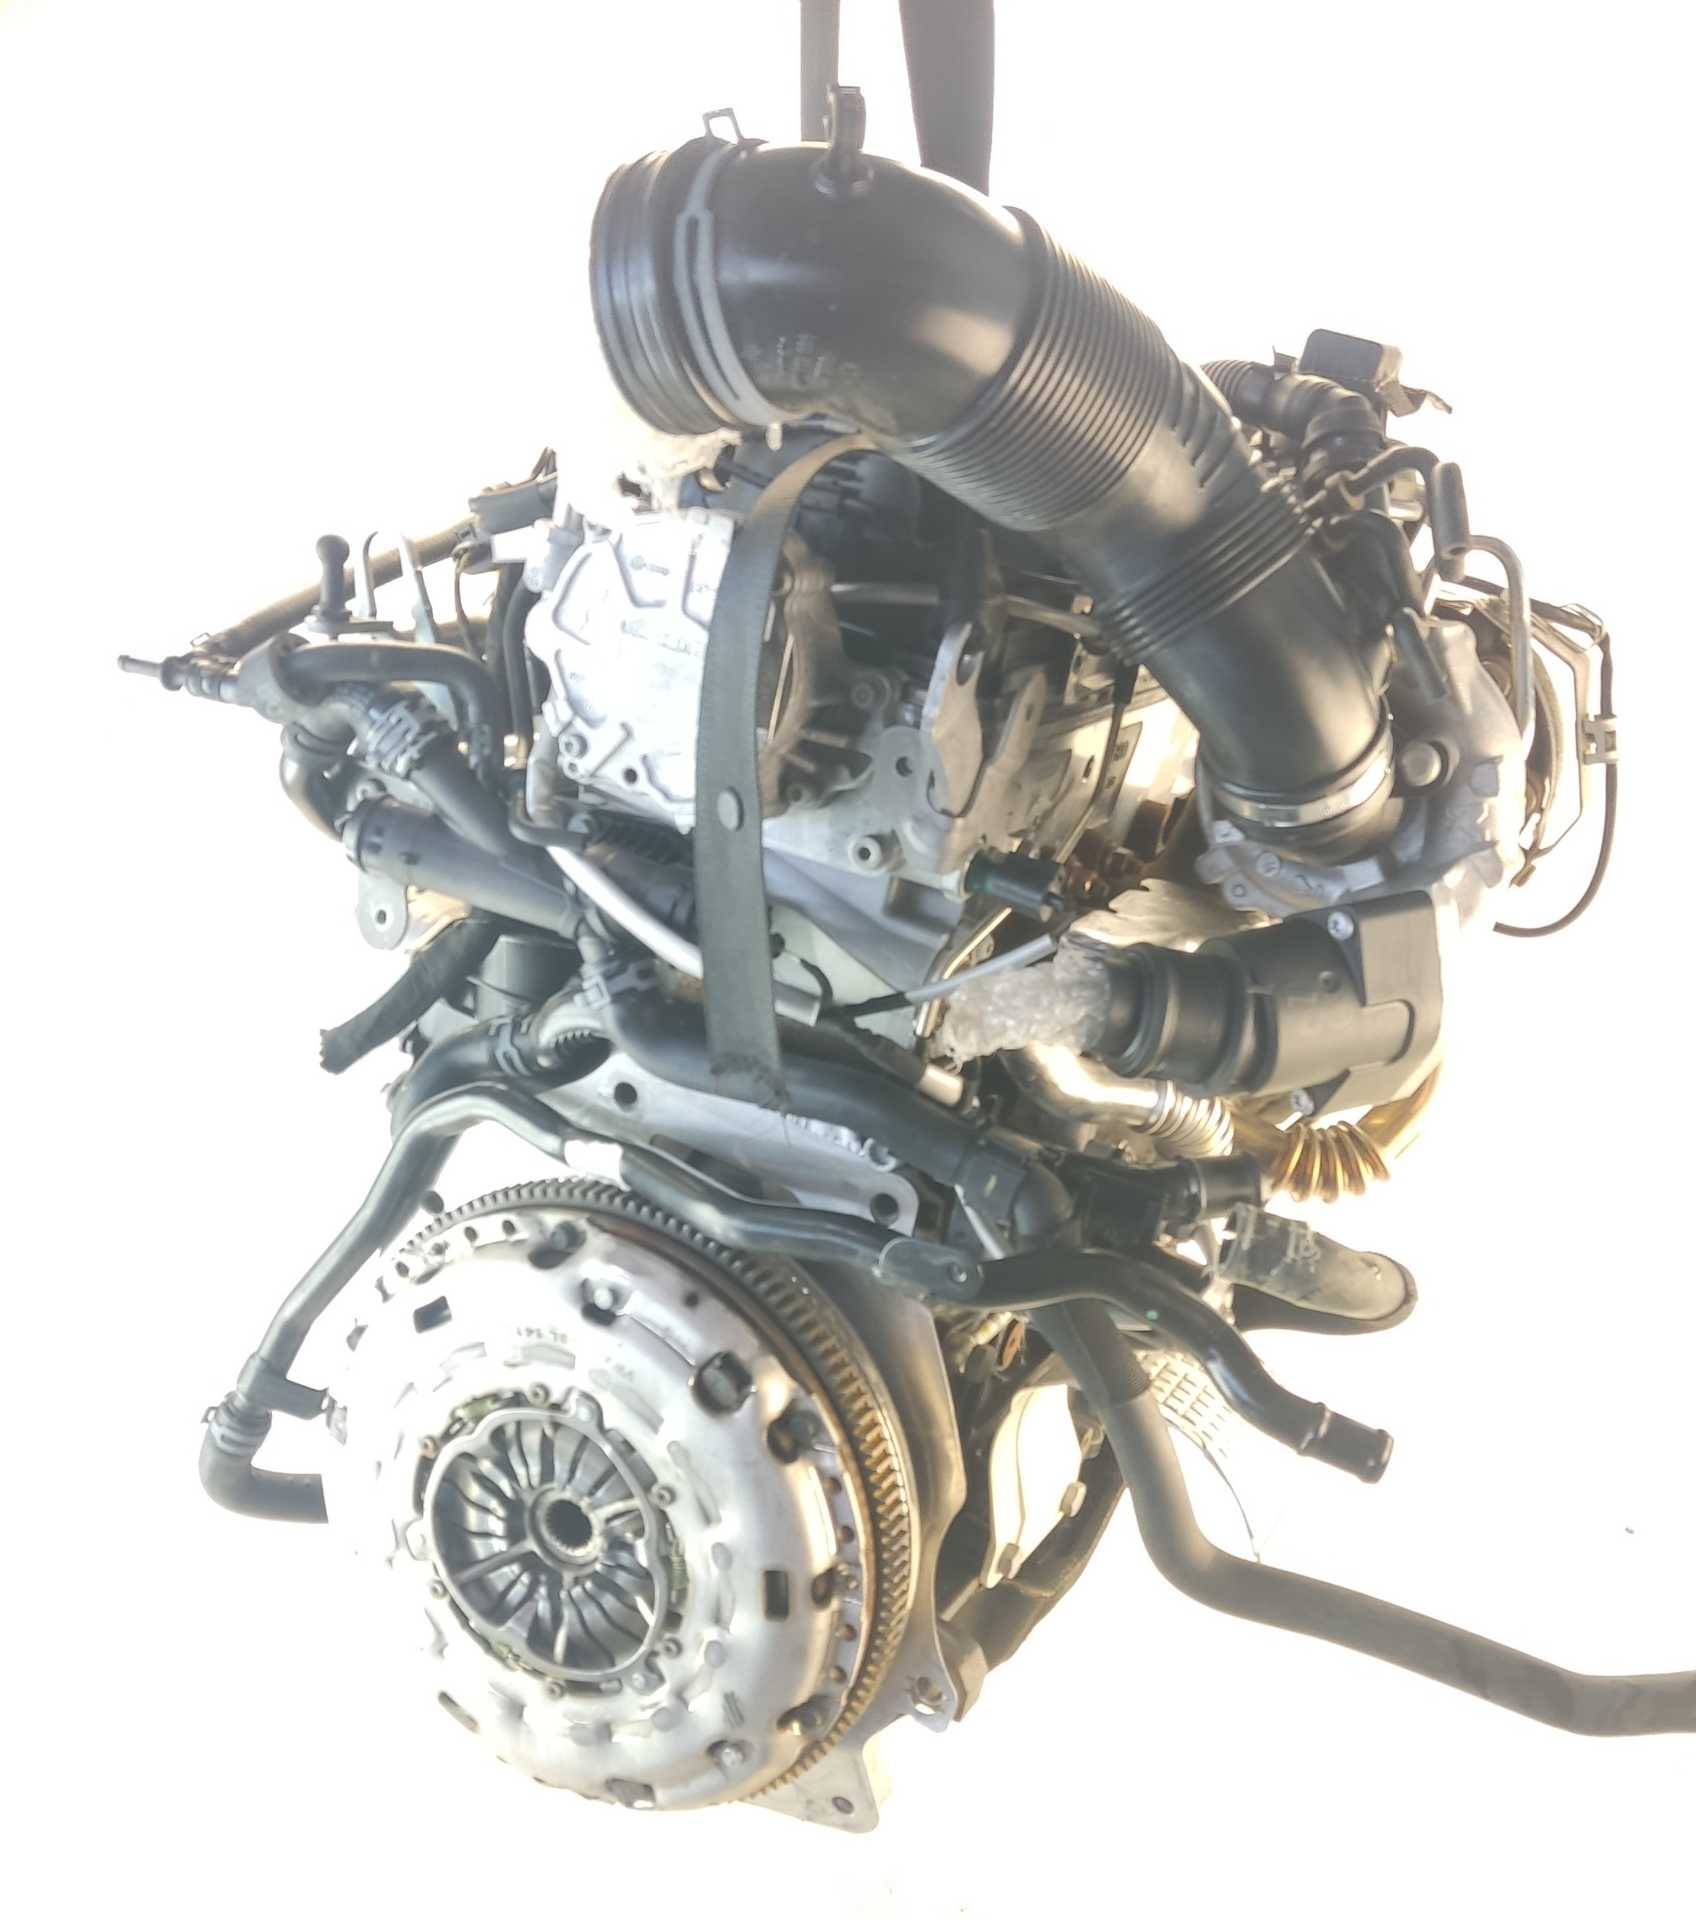 MOTOR VOLKSWAGEN TIGUAN 2.0 TDI (103 KW / 140 CV) (03.2008 - 07.2018)